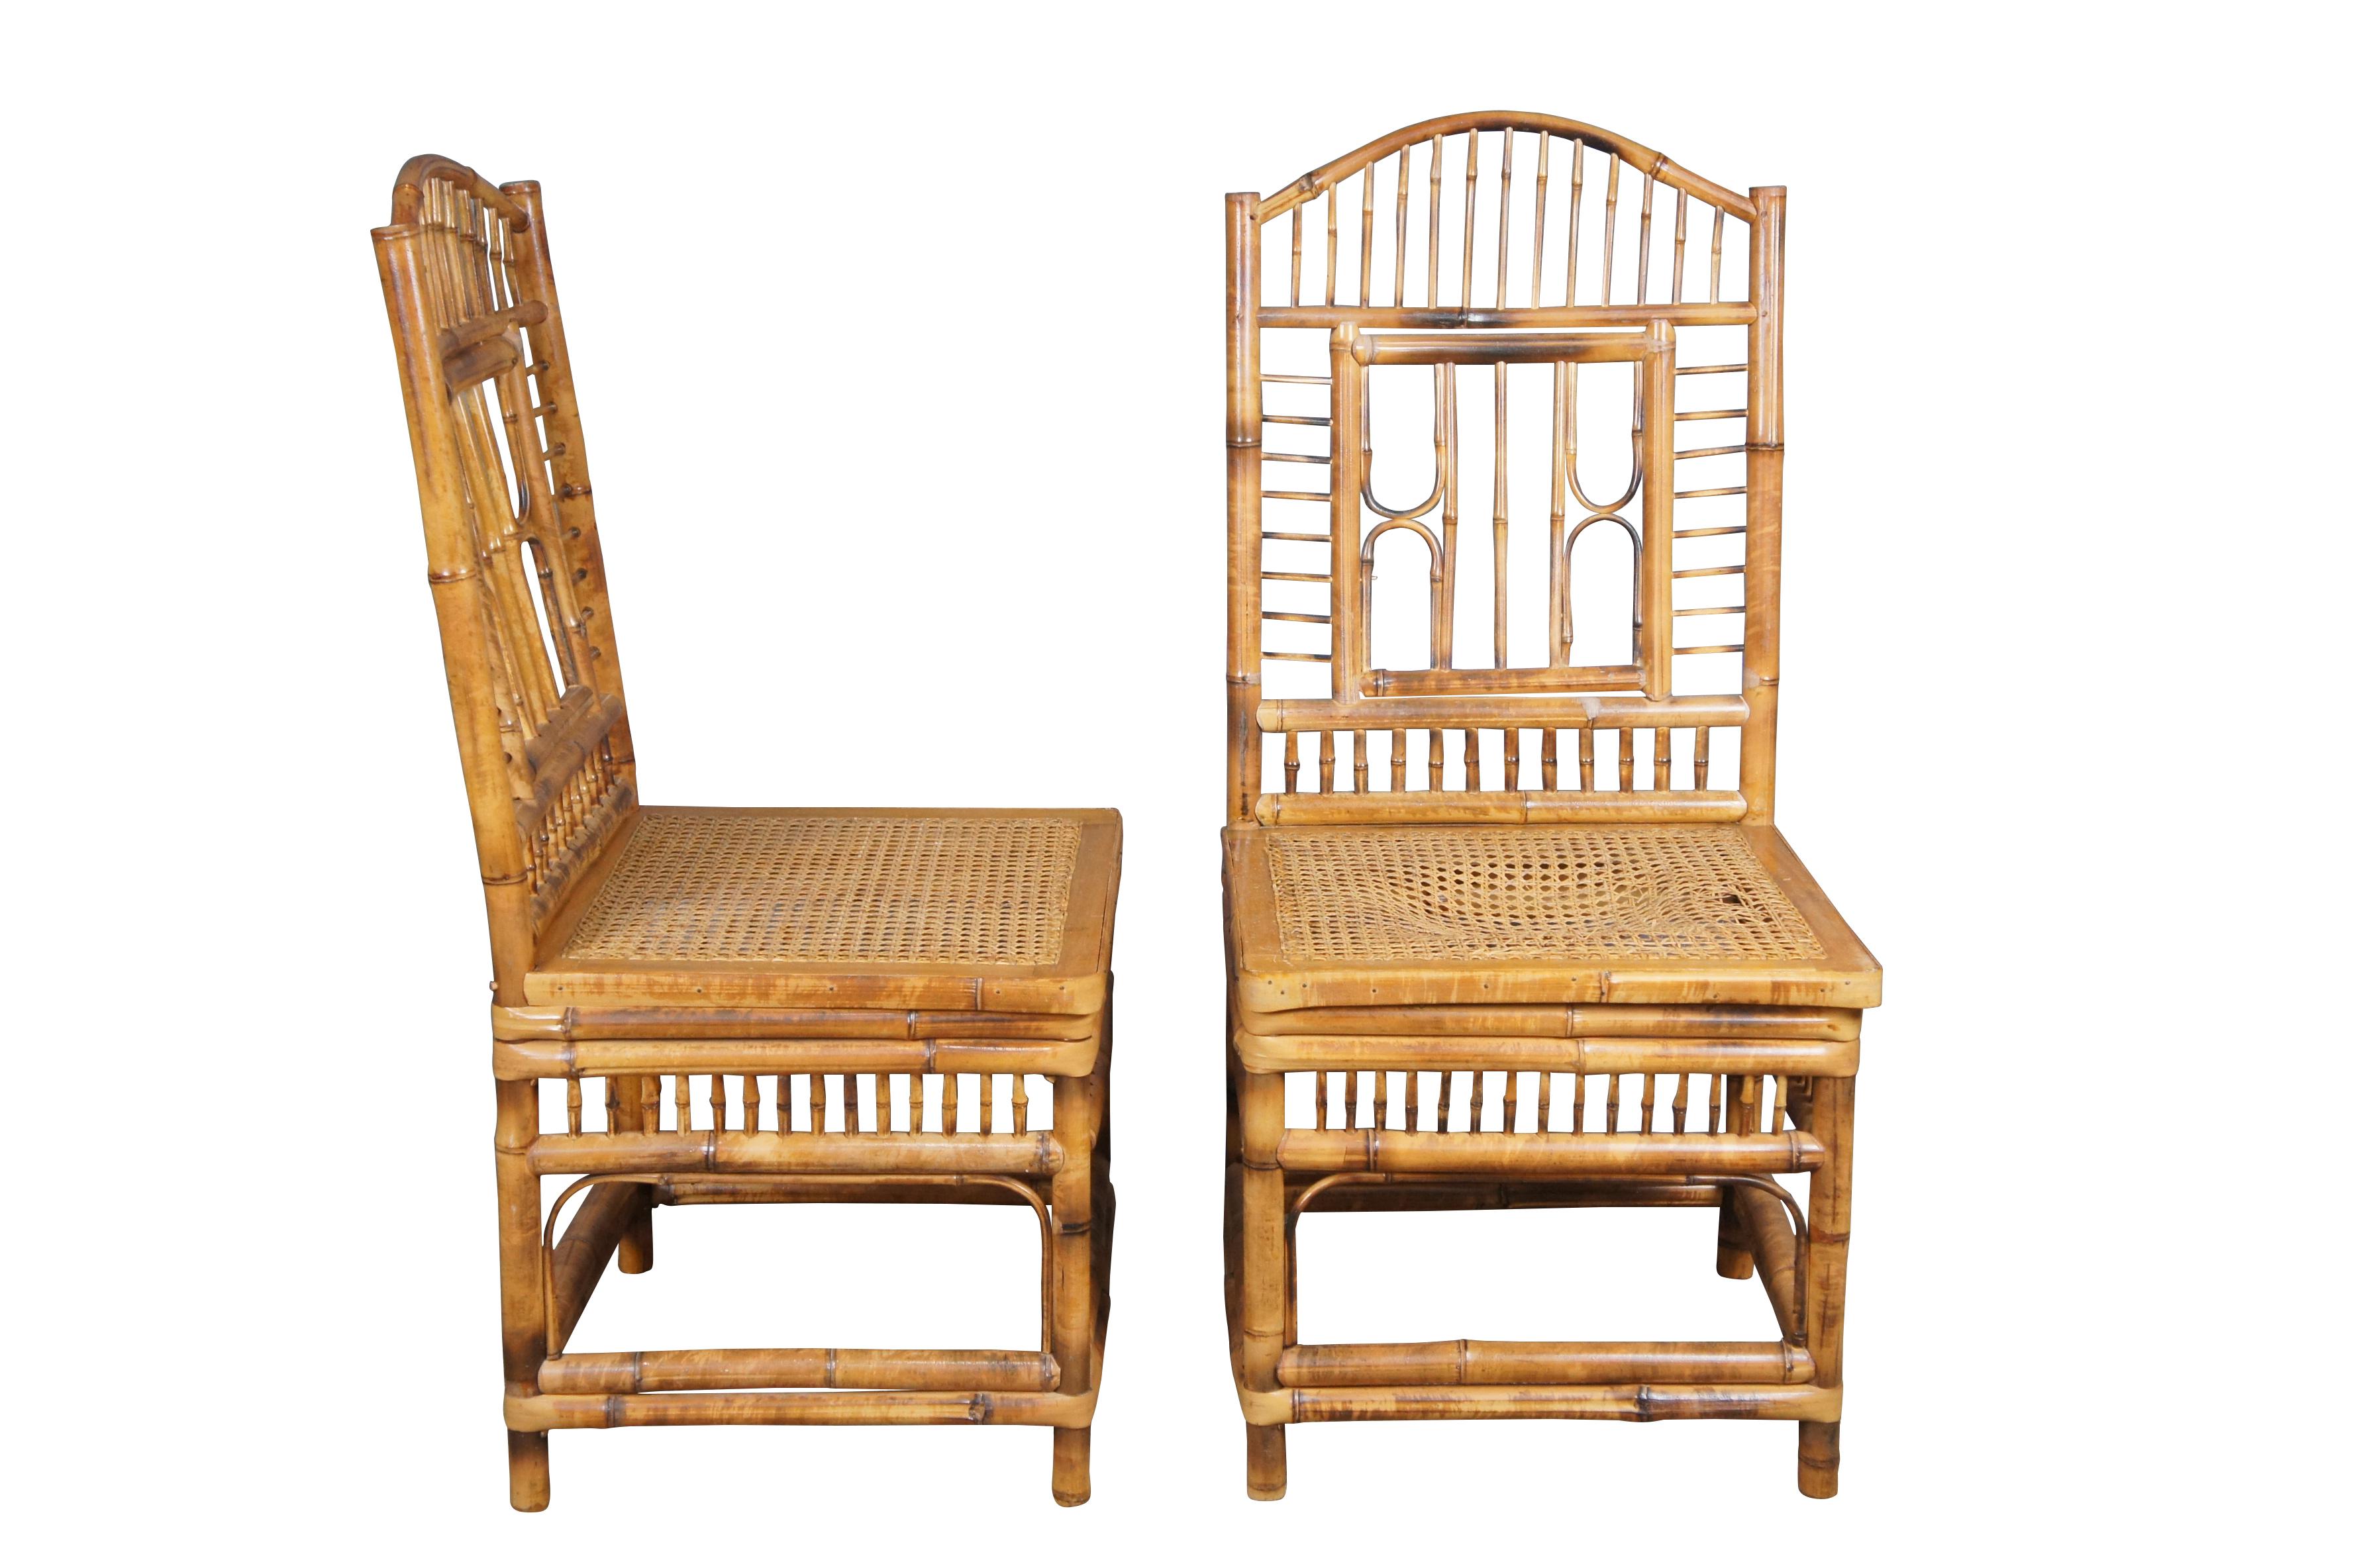 Beistellstühle aus Bambus und Rohrgeflecht aus der Mitte des 20. Inspiriert vom viktorianischen und chinesischen Chippendale-Stil. 

Abmessungen:
18